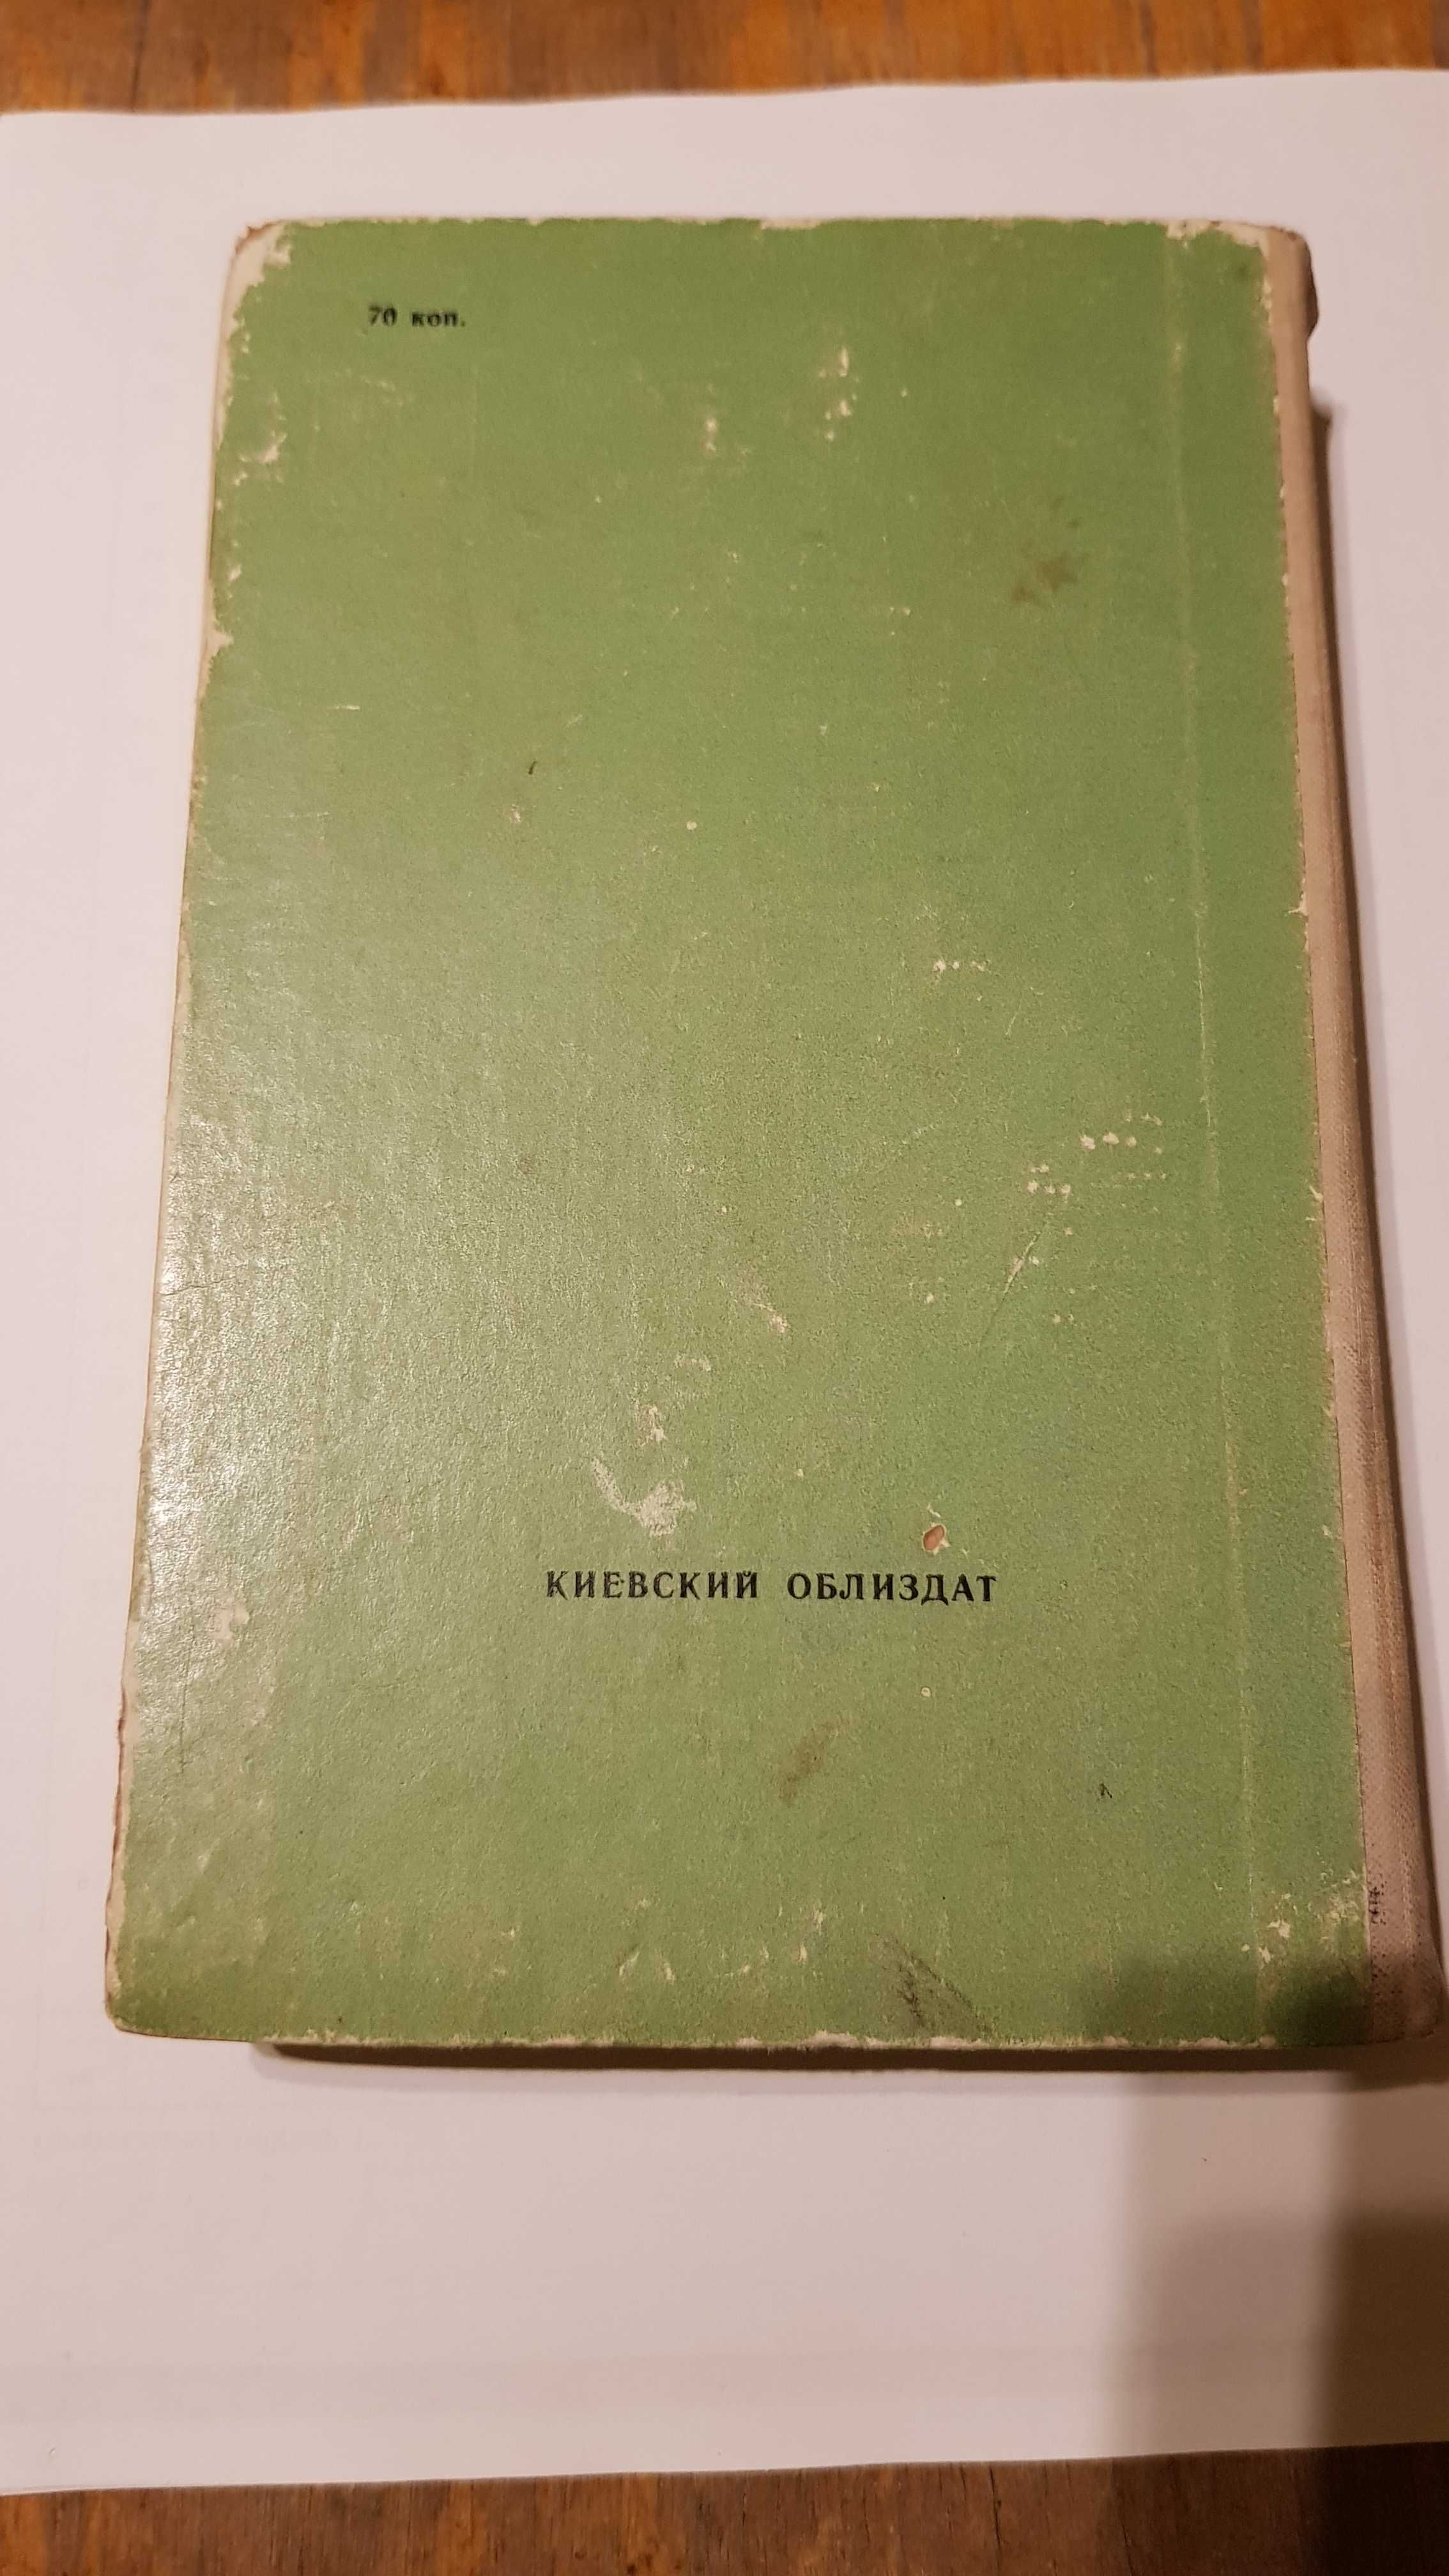 Нагула Г.Е. Учебник шофера третьего класса. 1962г.